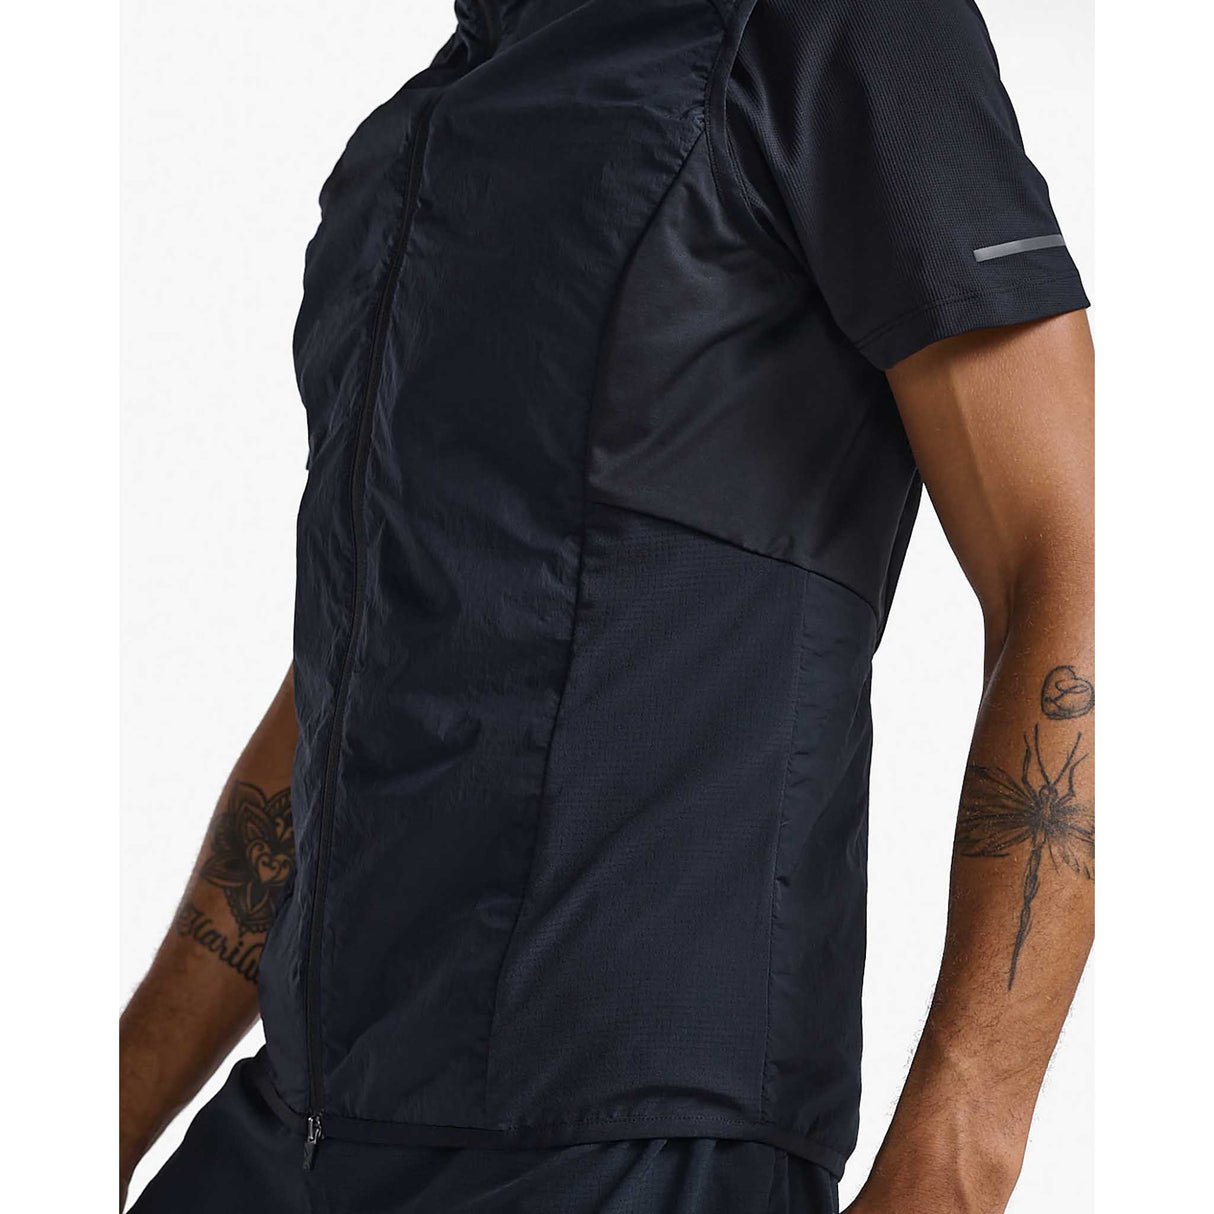 2XU Light Speed Hybrid veste homme noir / noir réfléchissant details